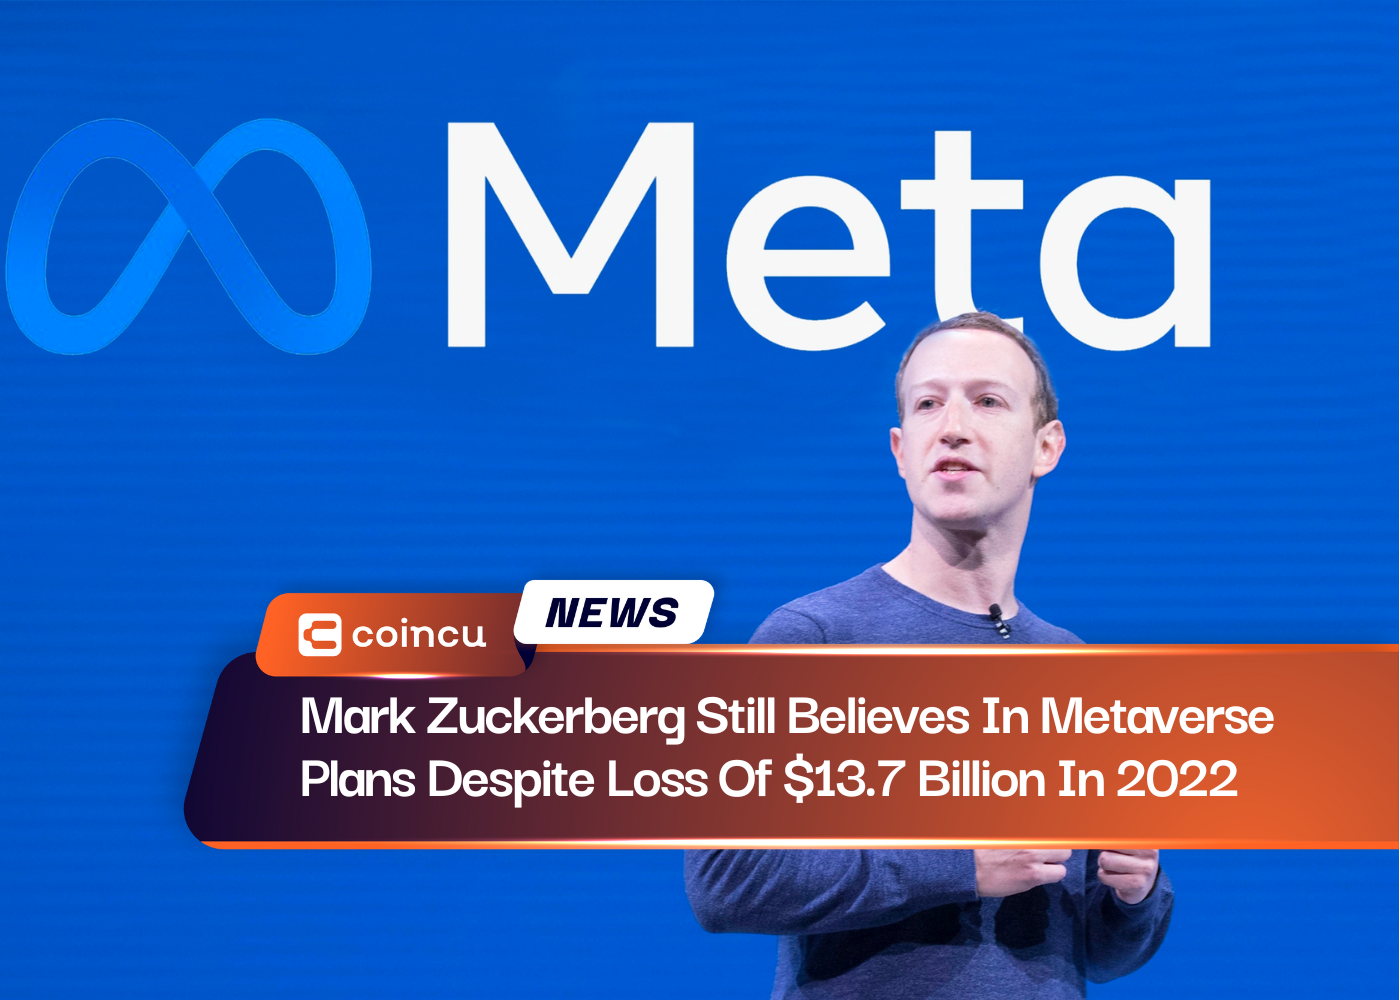 Mark Zuckerberg ainda acredita nos planos do metaverso, apesar da perda de US$ 13.7 bilhões em 2022